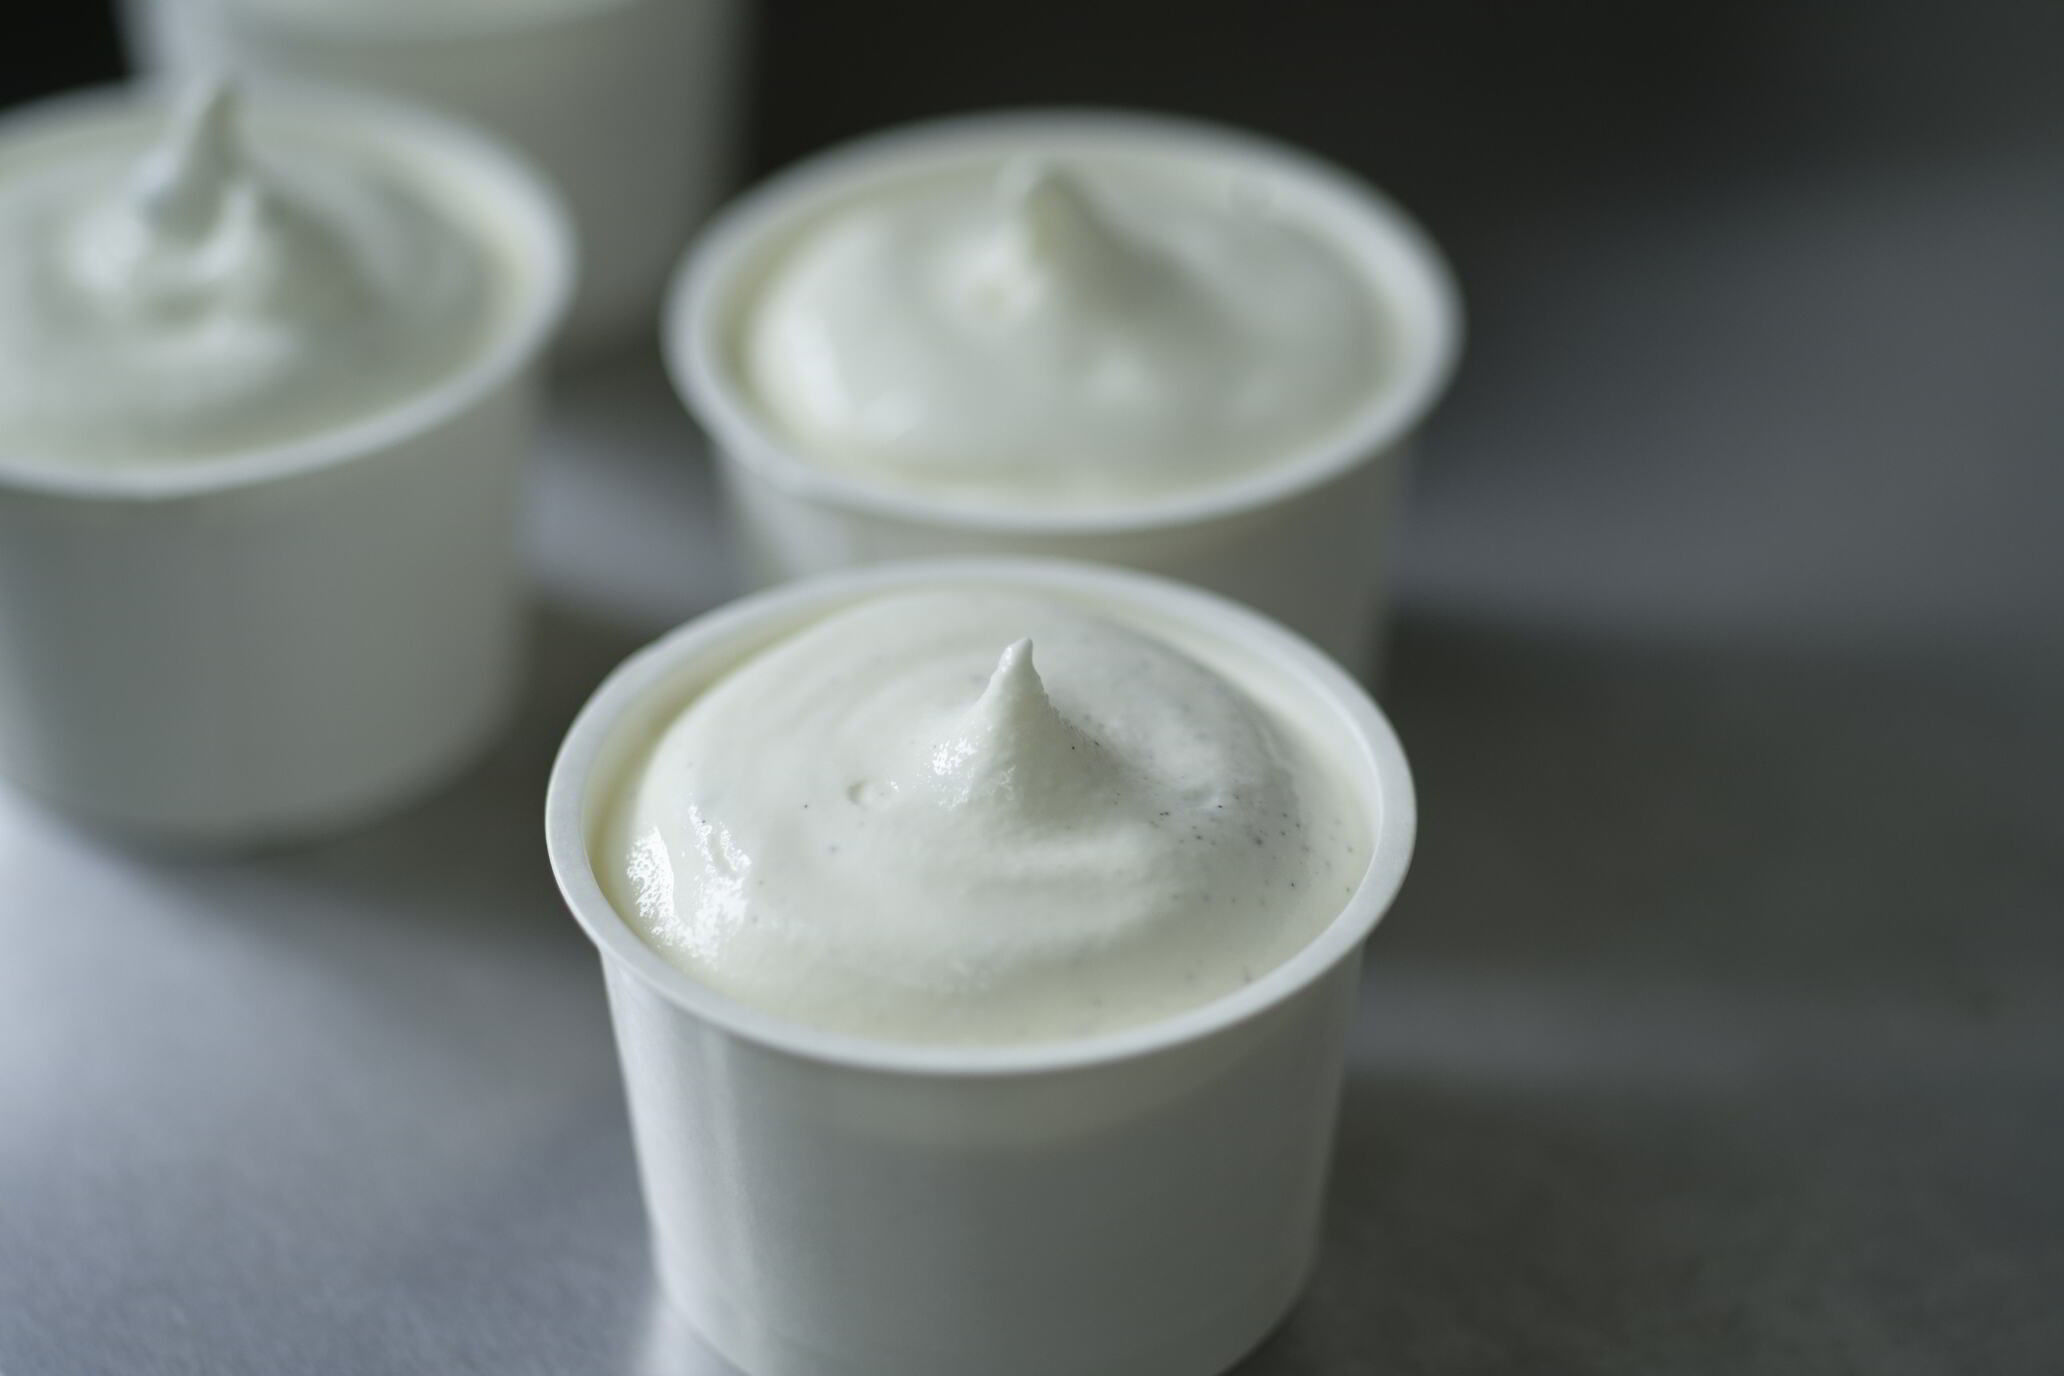 ひらかわ牧場のしぼりたて生乳で作ったアイスクリーム【2Lパック・バニラ】